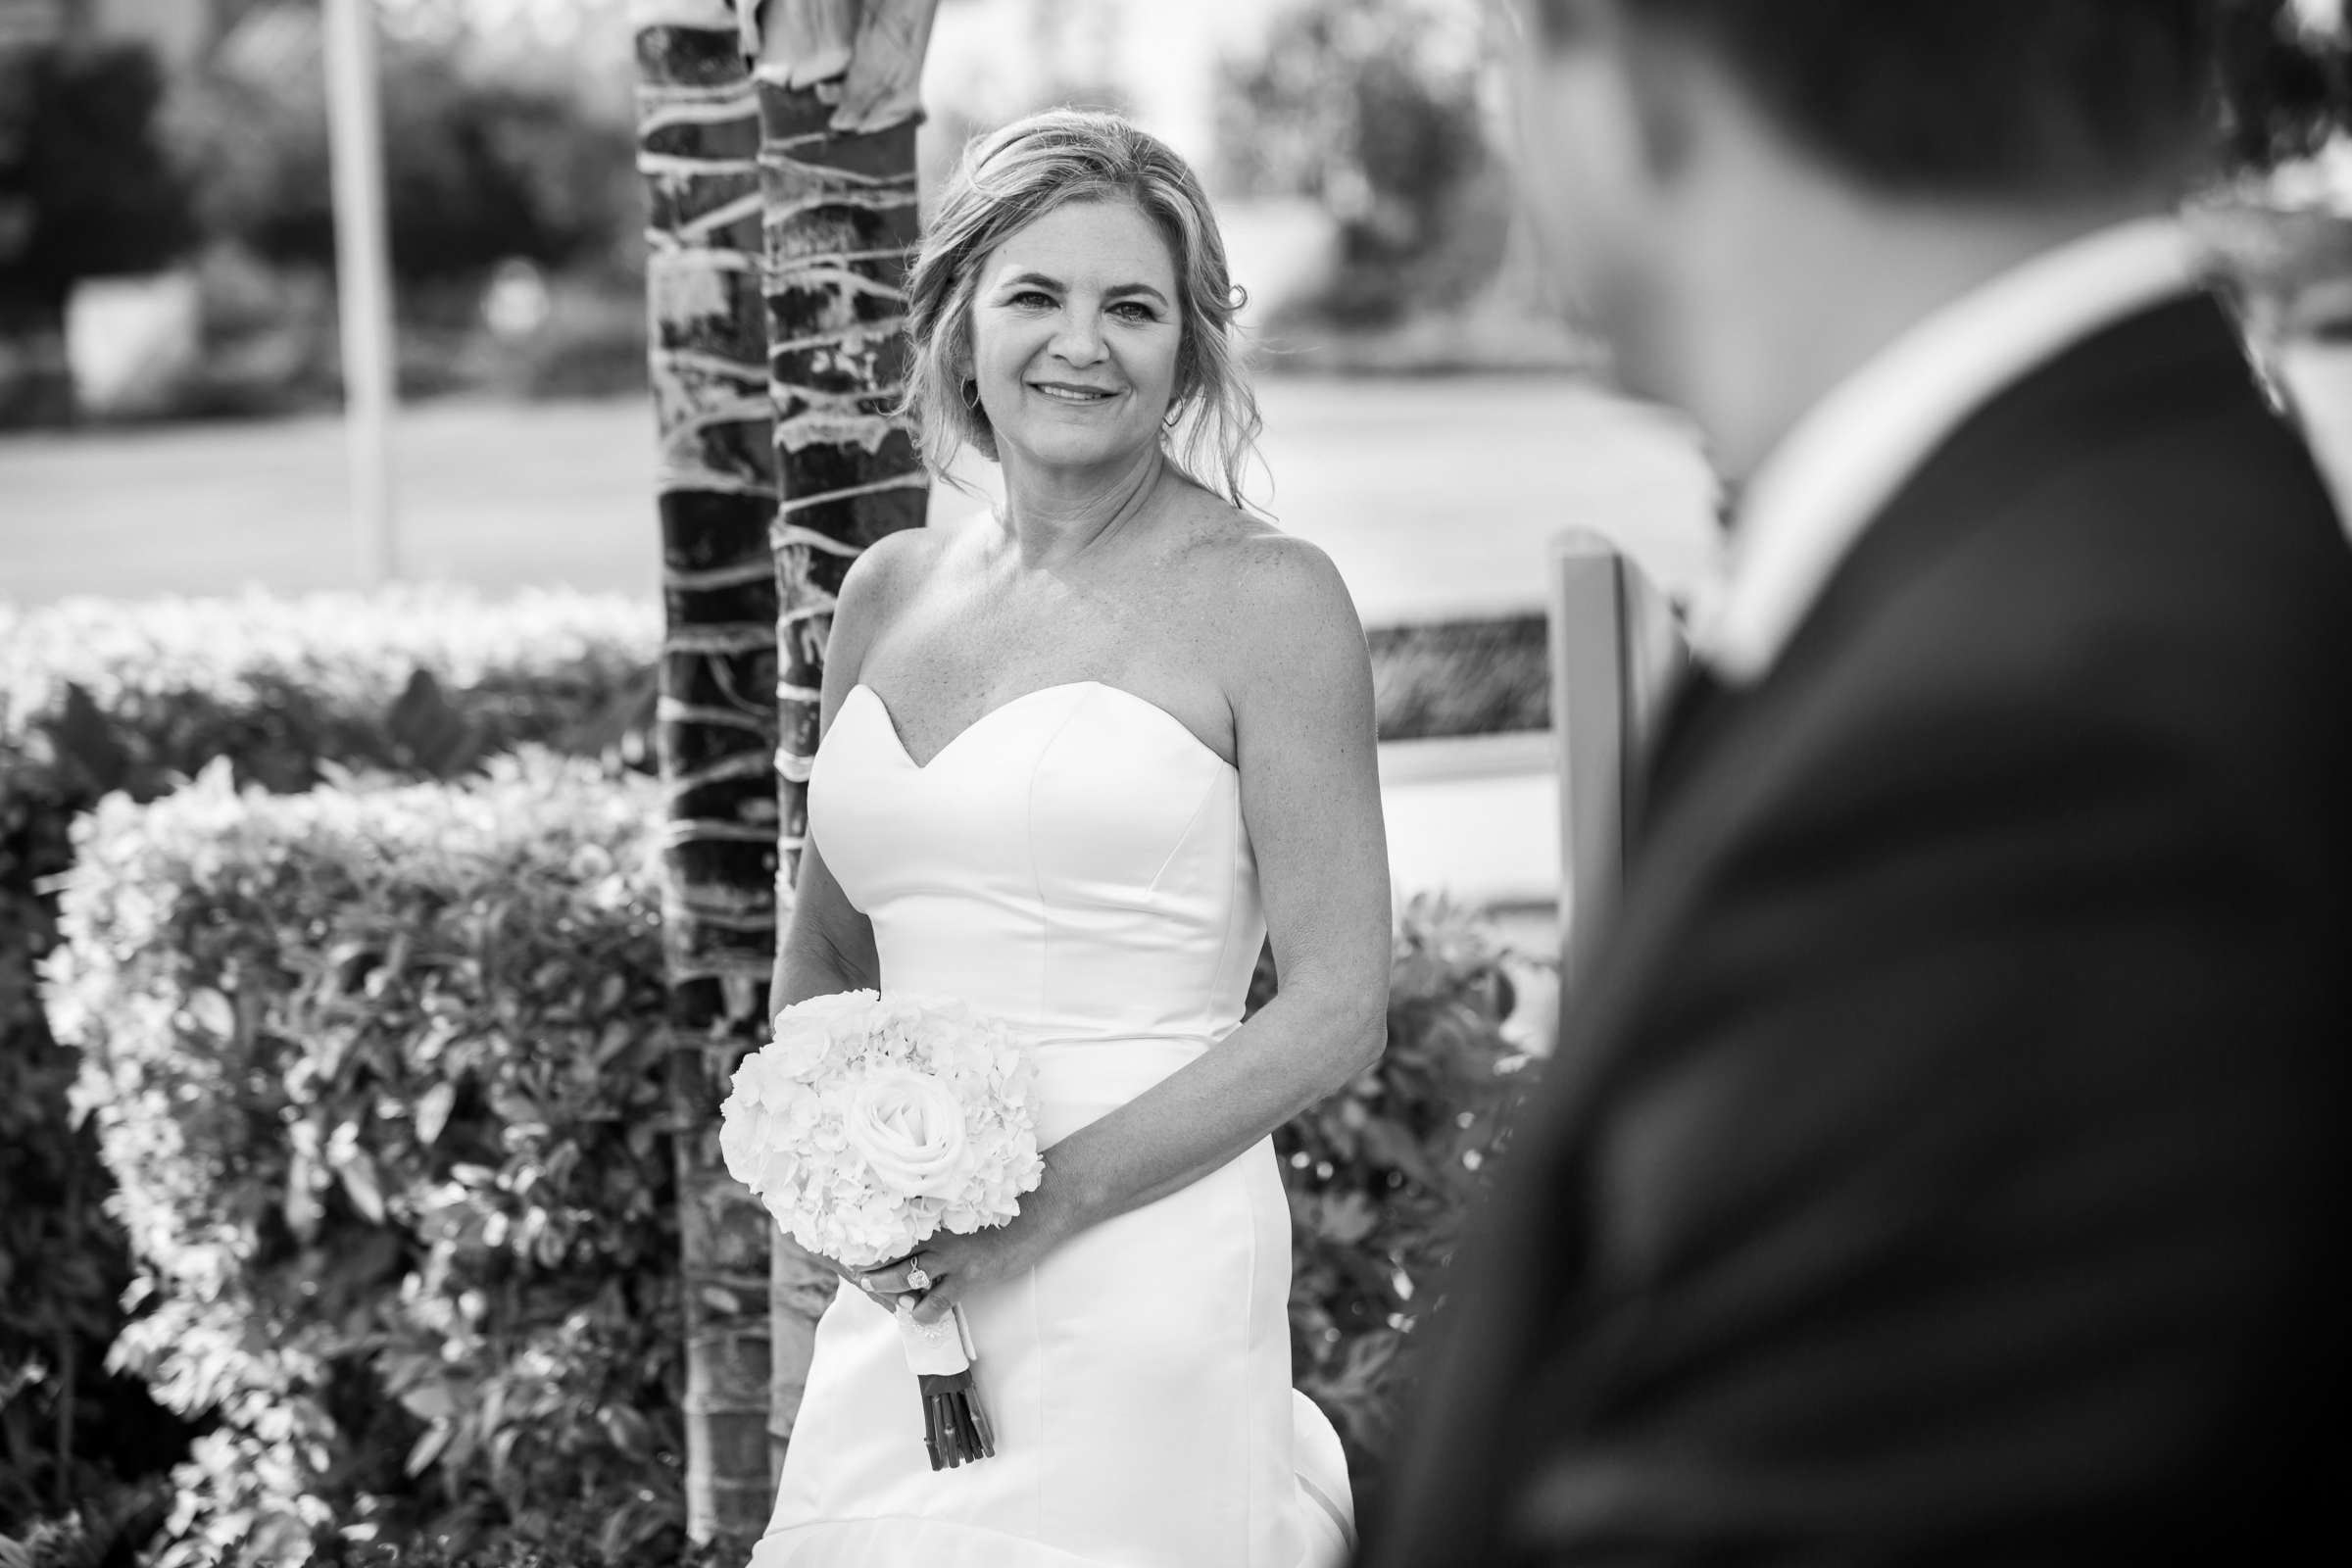 Hilton San Diego Bayfront Wedding, Debi and Dan Wedding Photo #484016 by True Photography